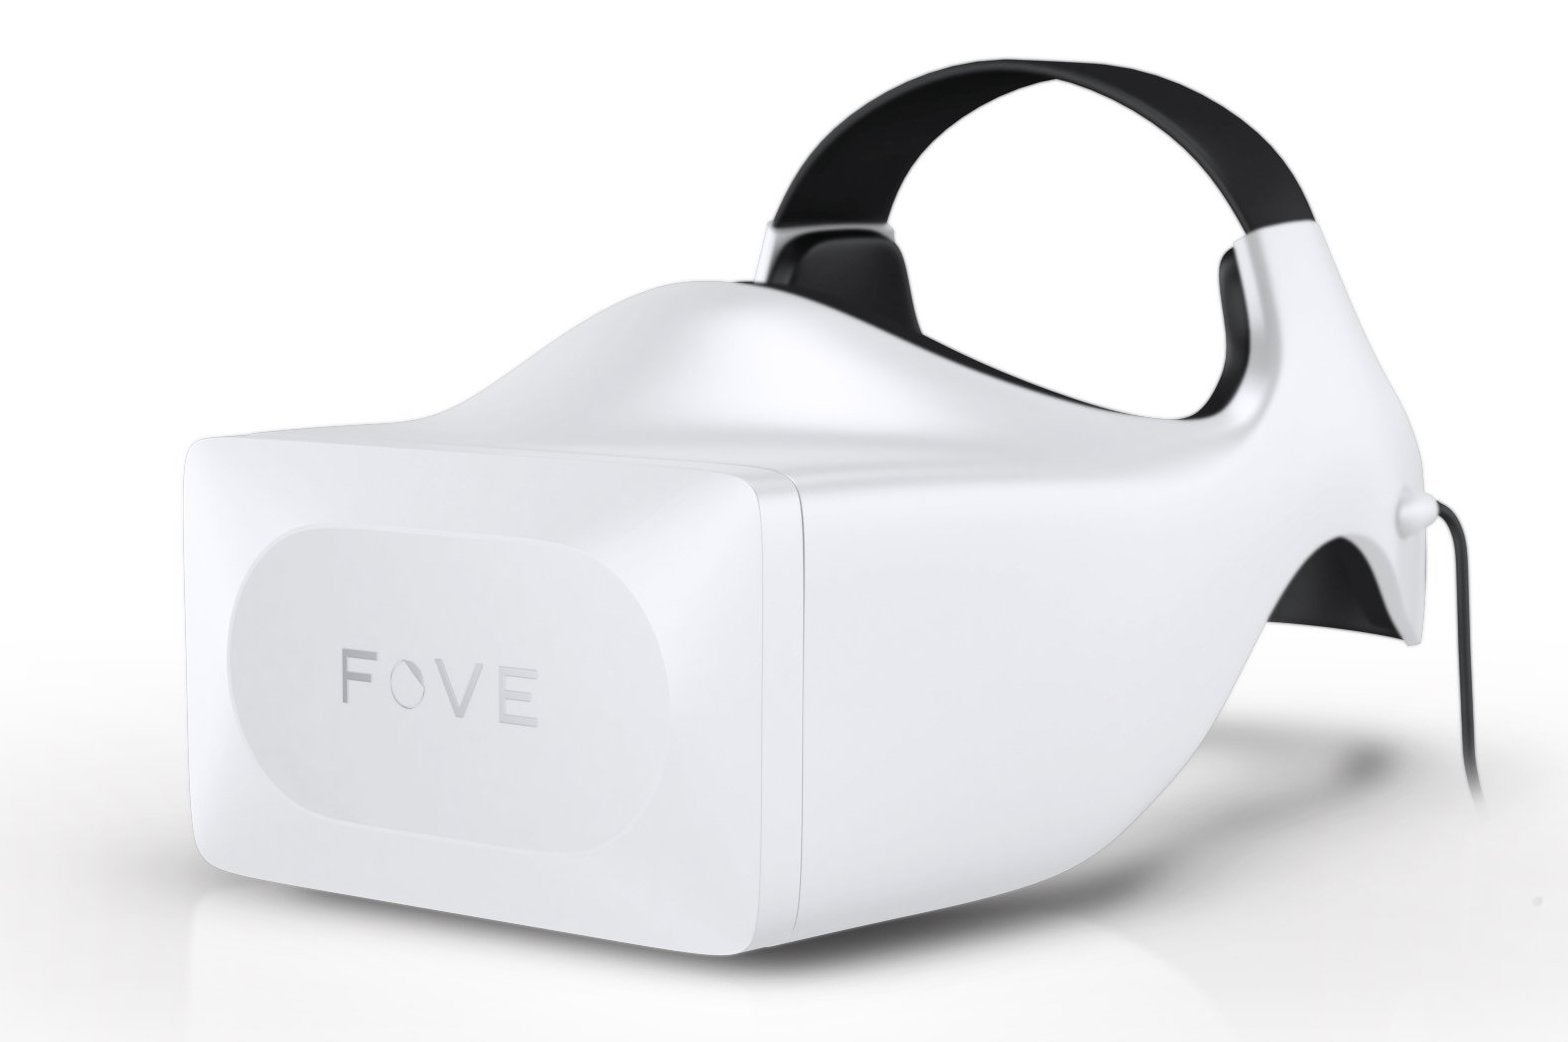 Microsoft shows interest in eye-tracking visor FOVE | Eurogamer.net